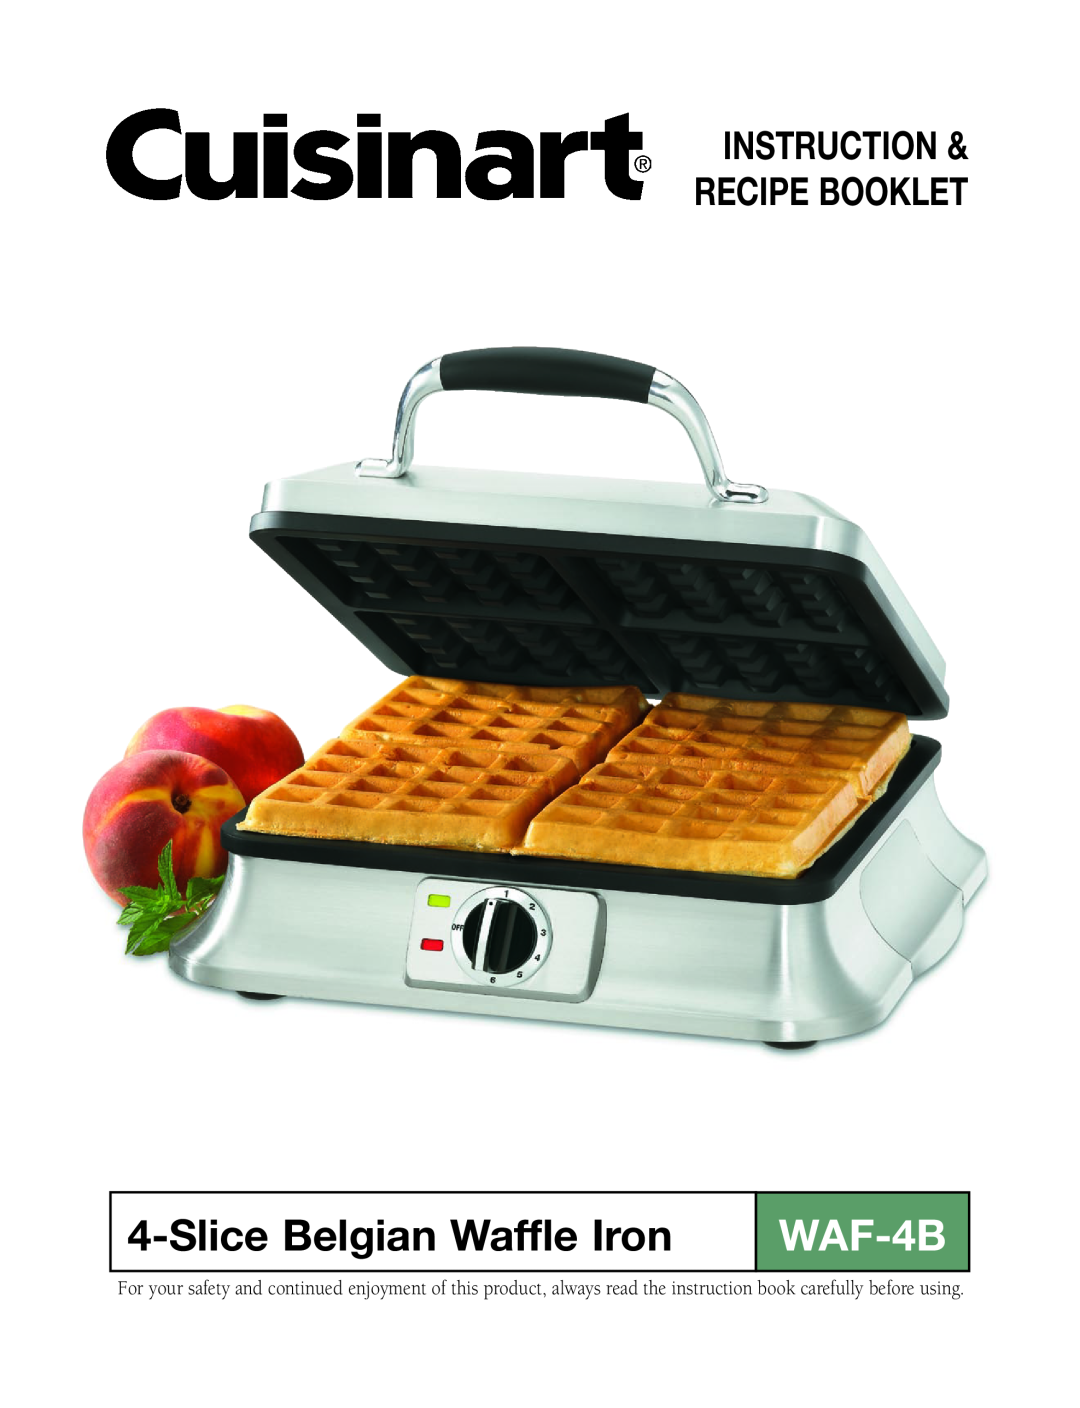 Cuisinart WAF-4B manual SliceBelgian Waffle Iron, Instruction & Recipe Booklet 